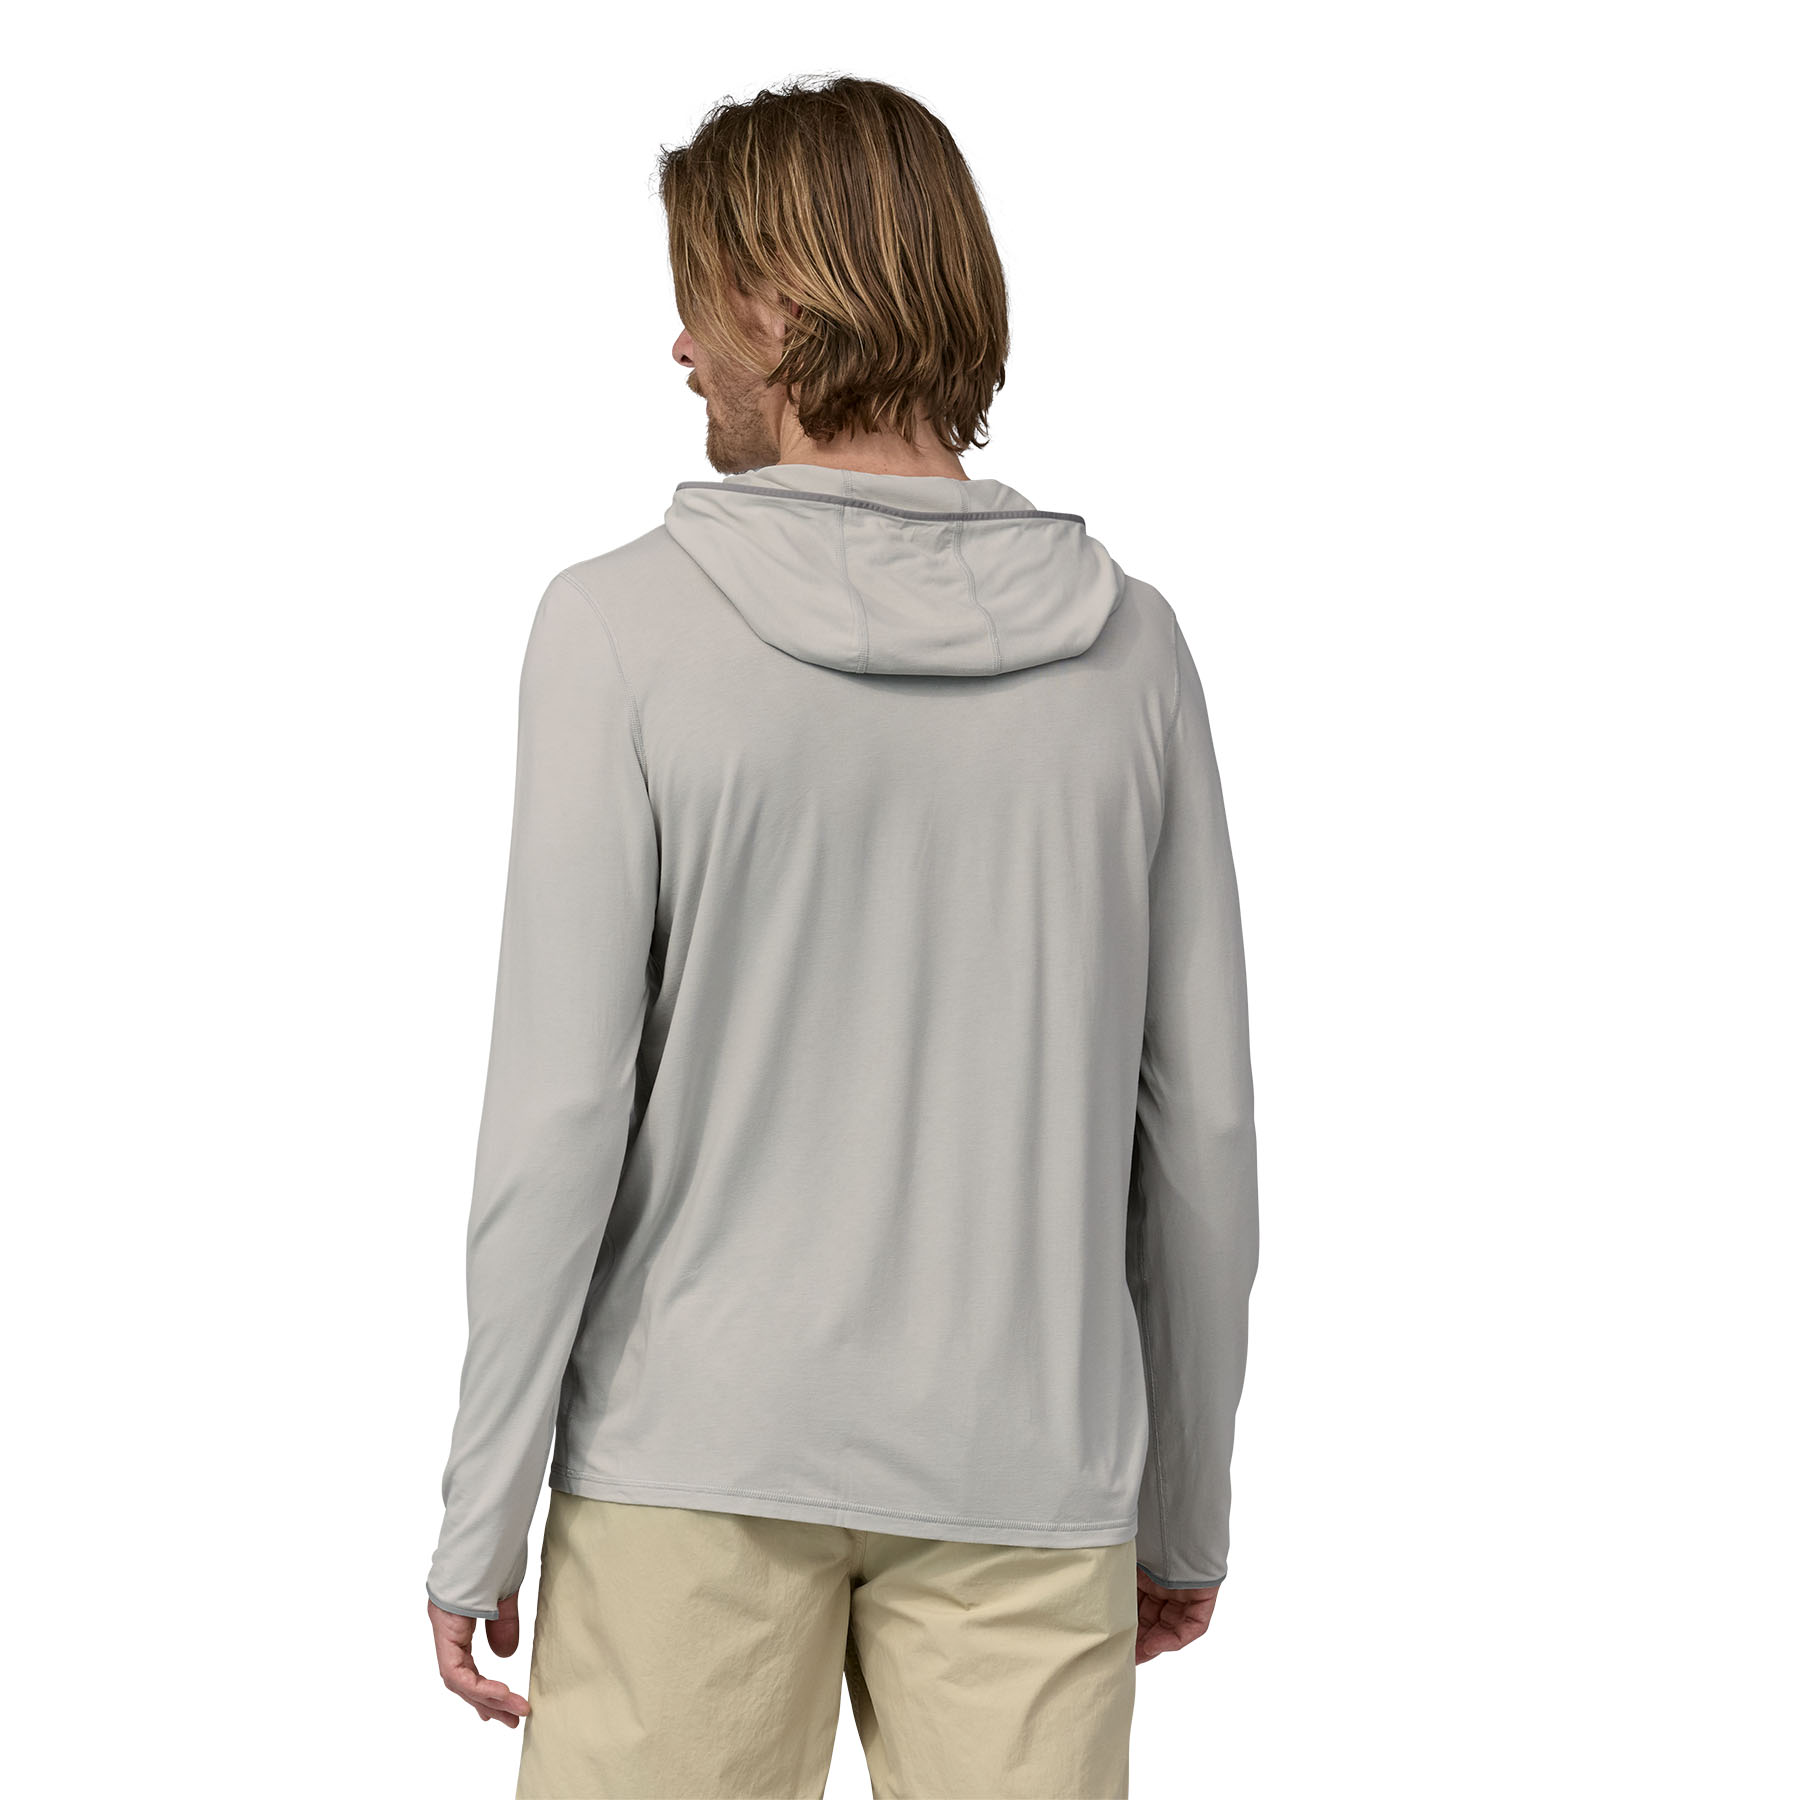 Tropic Comfort Natural Hoody (tailored grey)